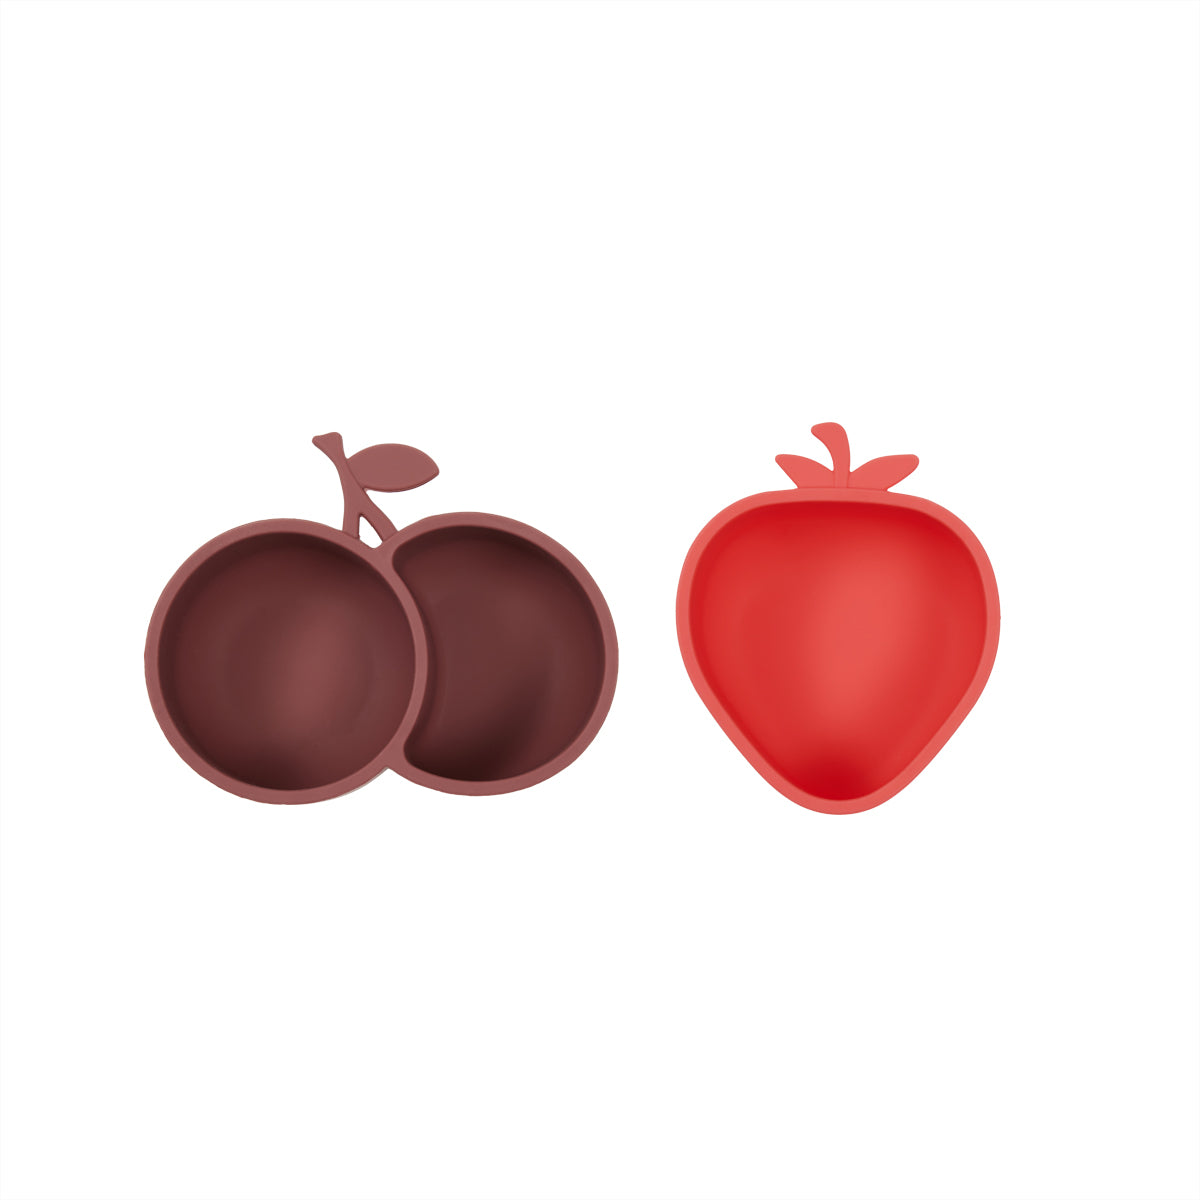 OYOY MINI Yummy Strawberry & Cherry Snack Bowl Bowl 405 Cherry Red / Nutmeg